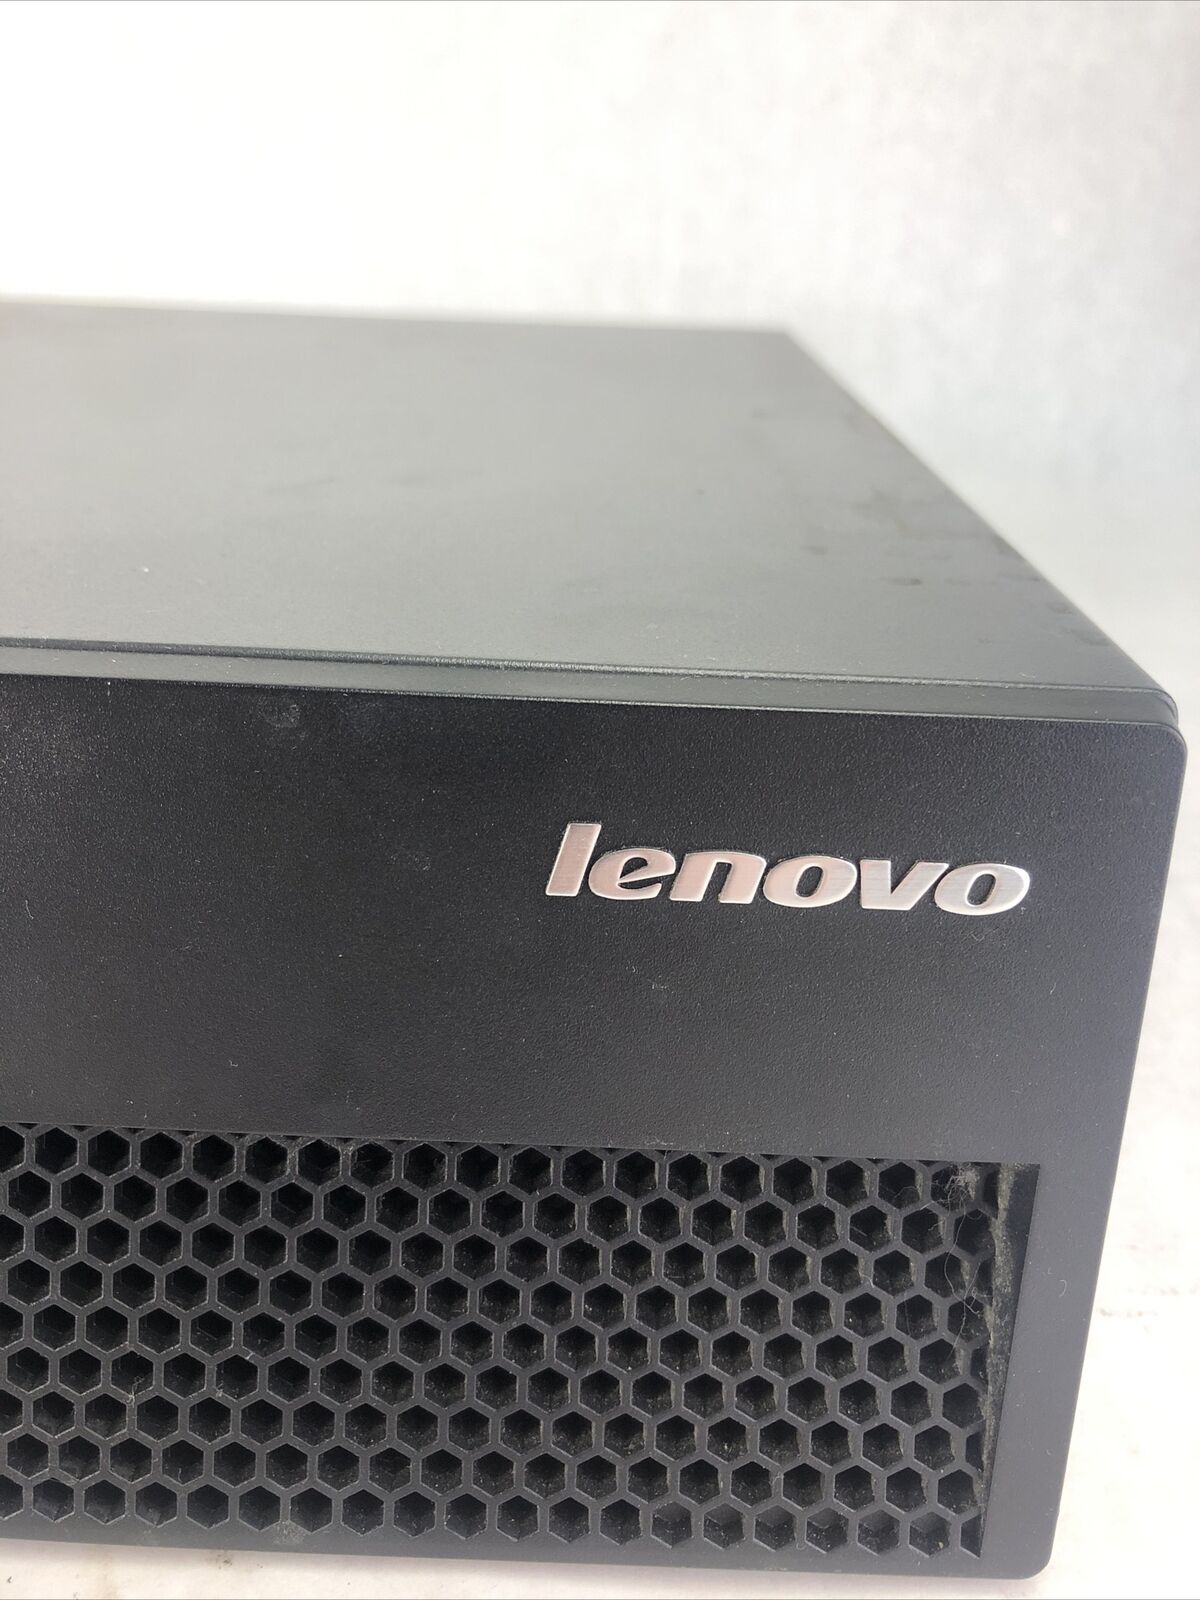 Lenovo ThinkCentre 89010 ARU DT Intel Core 2 Duo E7500 2.93GHz 4GB No HDD No OS